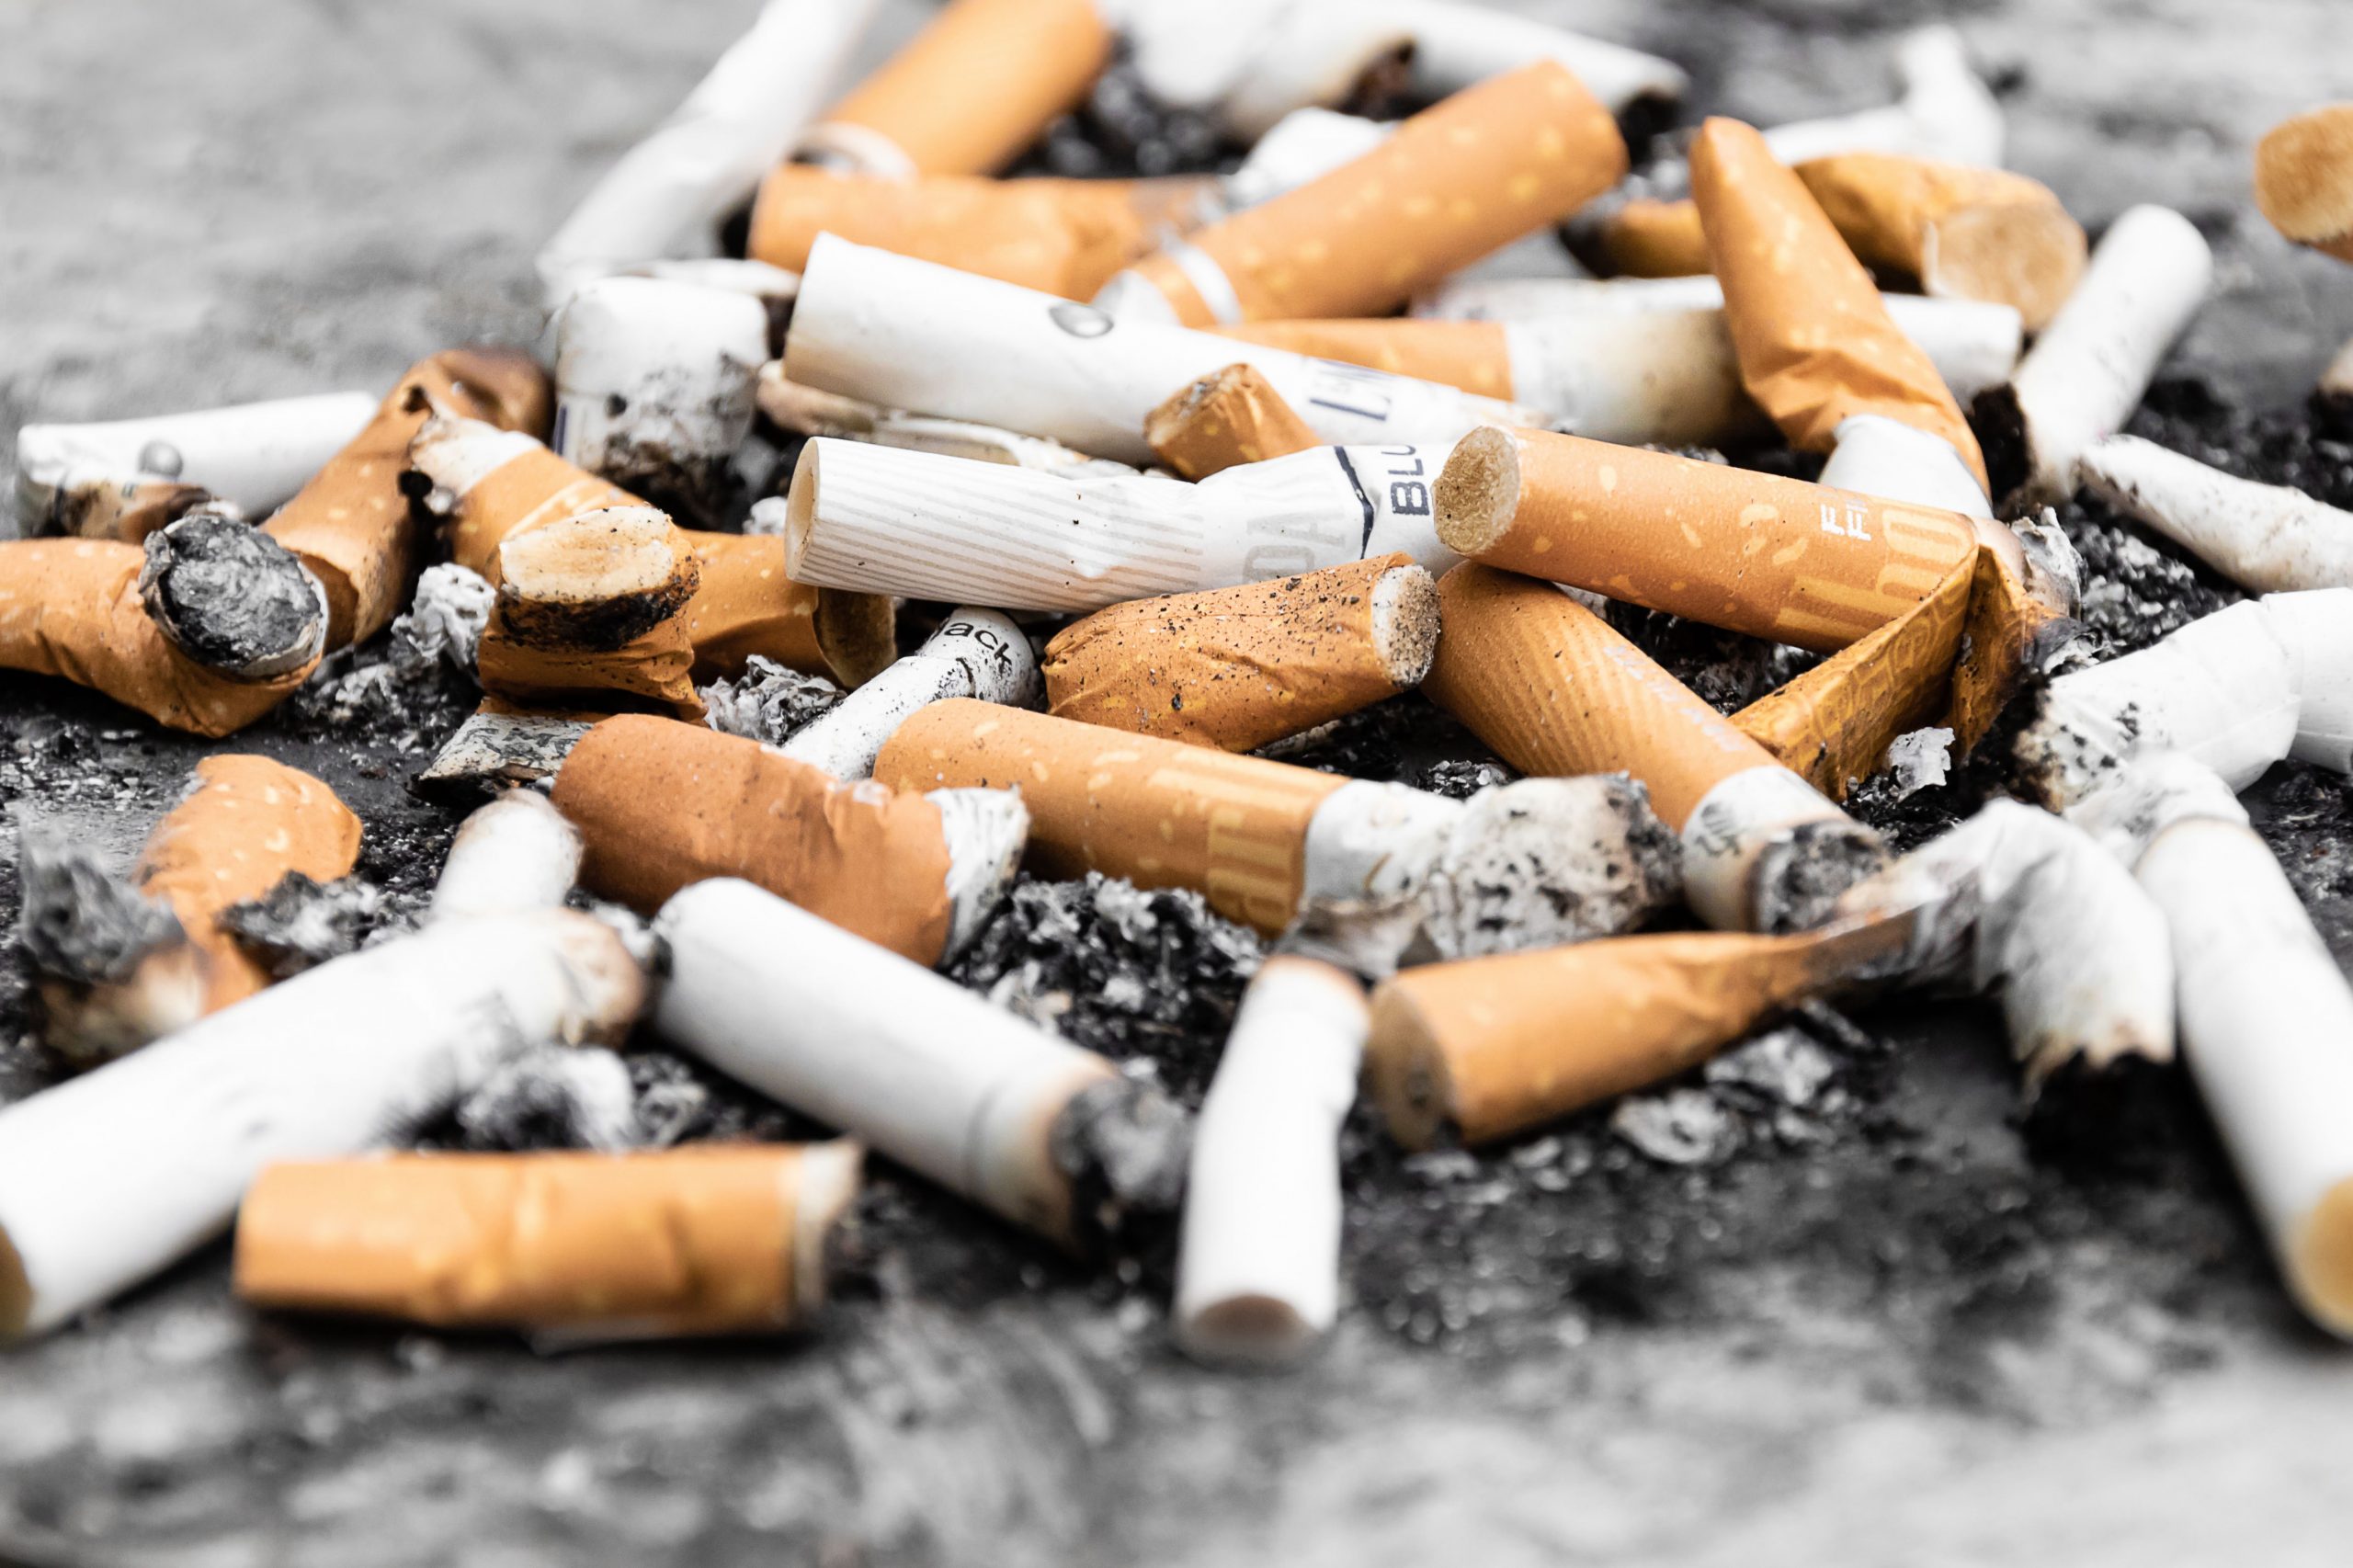 تخطط الحكومة لمنع الأشخاص تحت 21 عام من شراء السجائر!